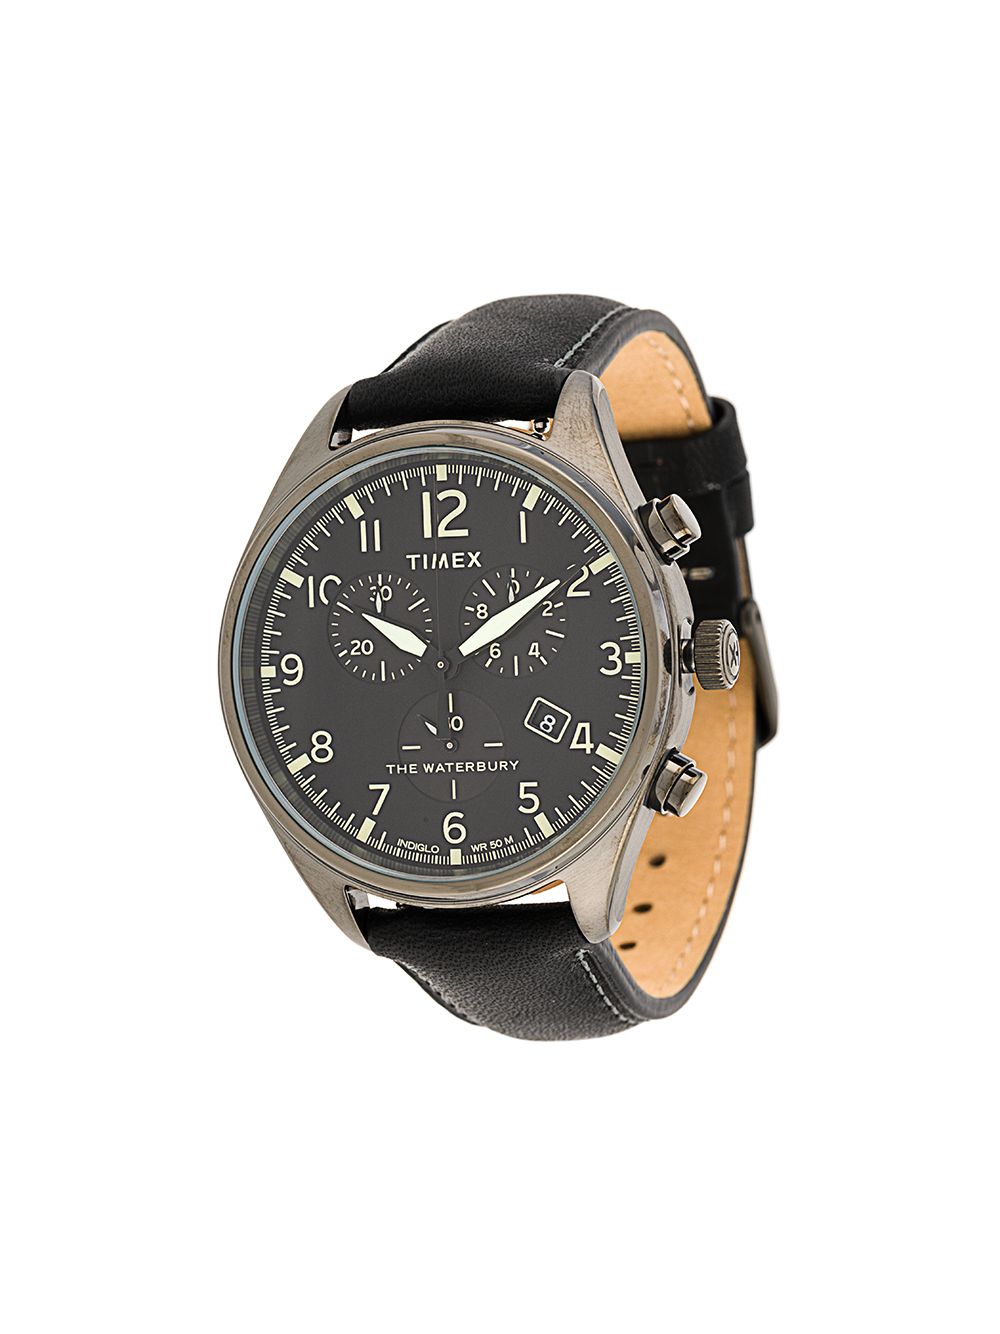 TIMEX наручные часы Waterbury Traditional Chronograph